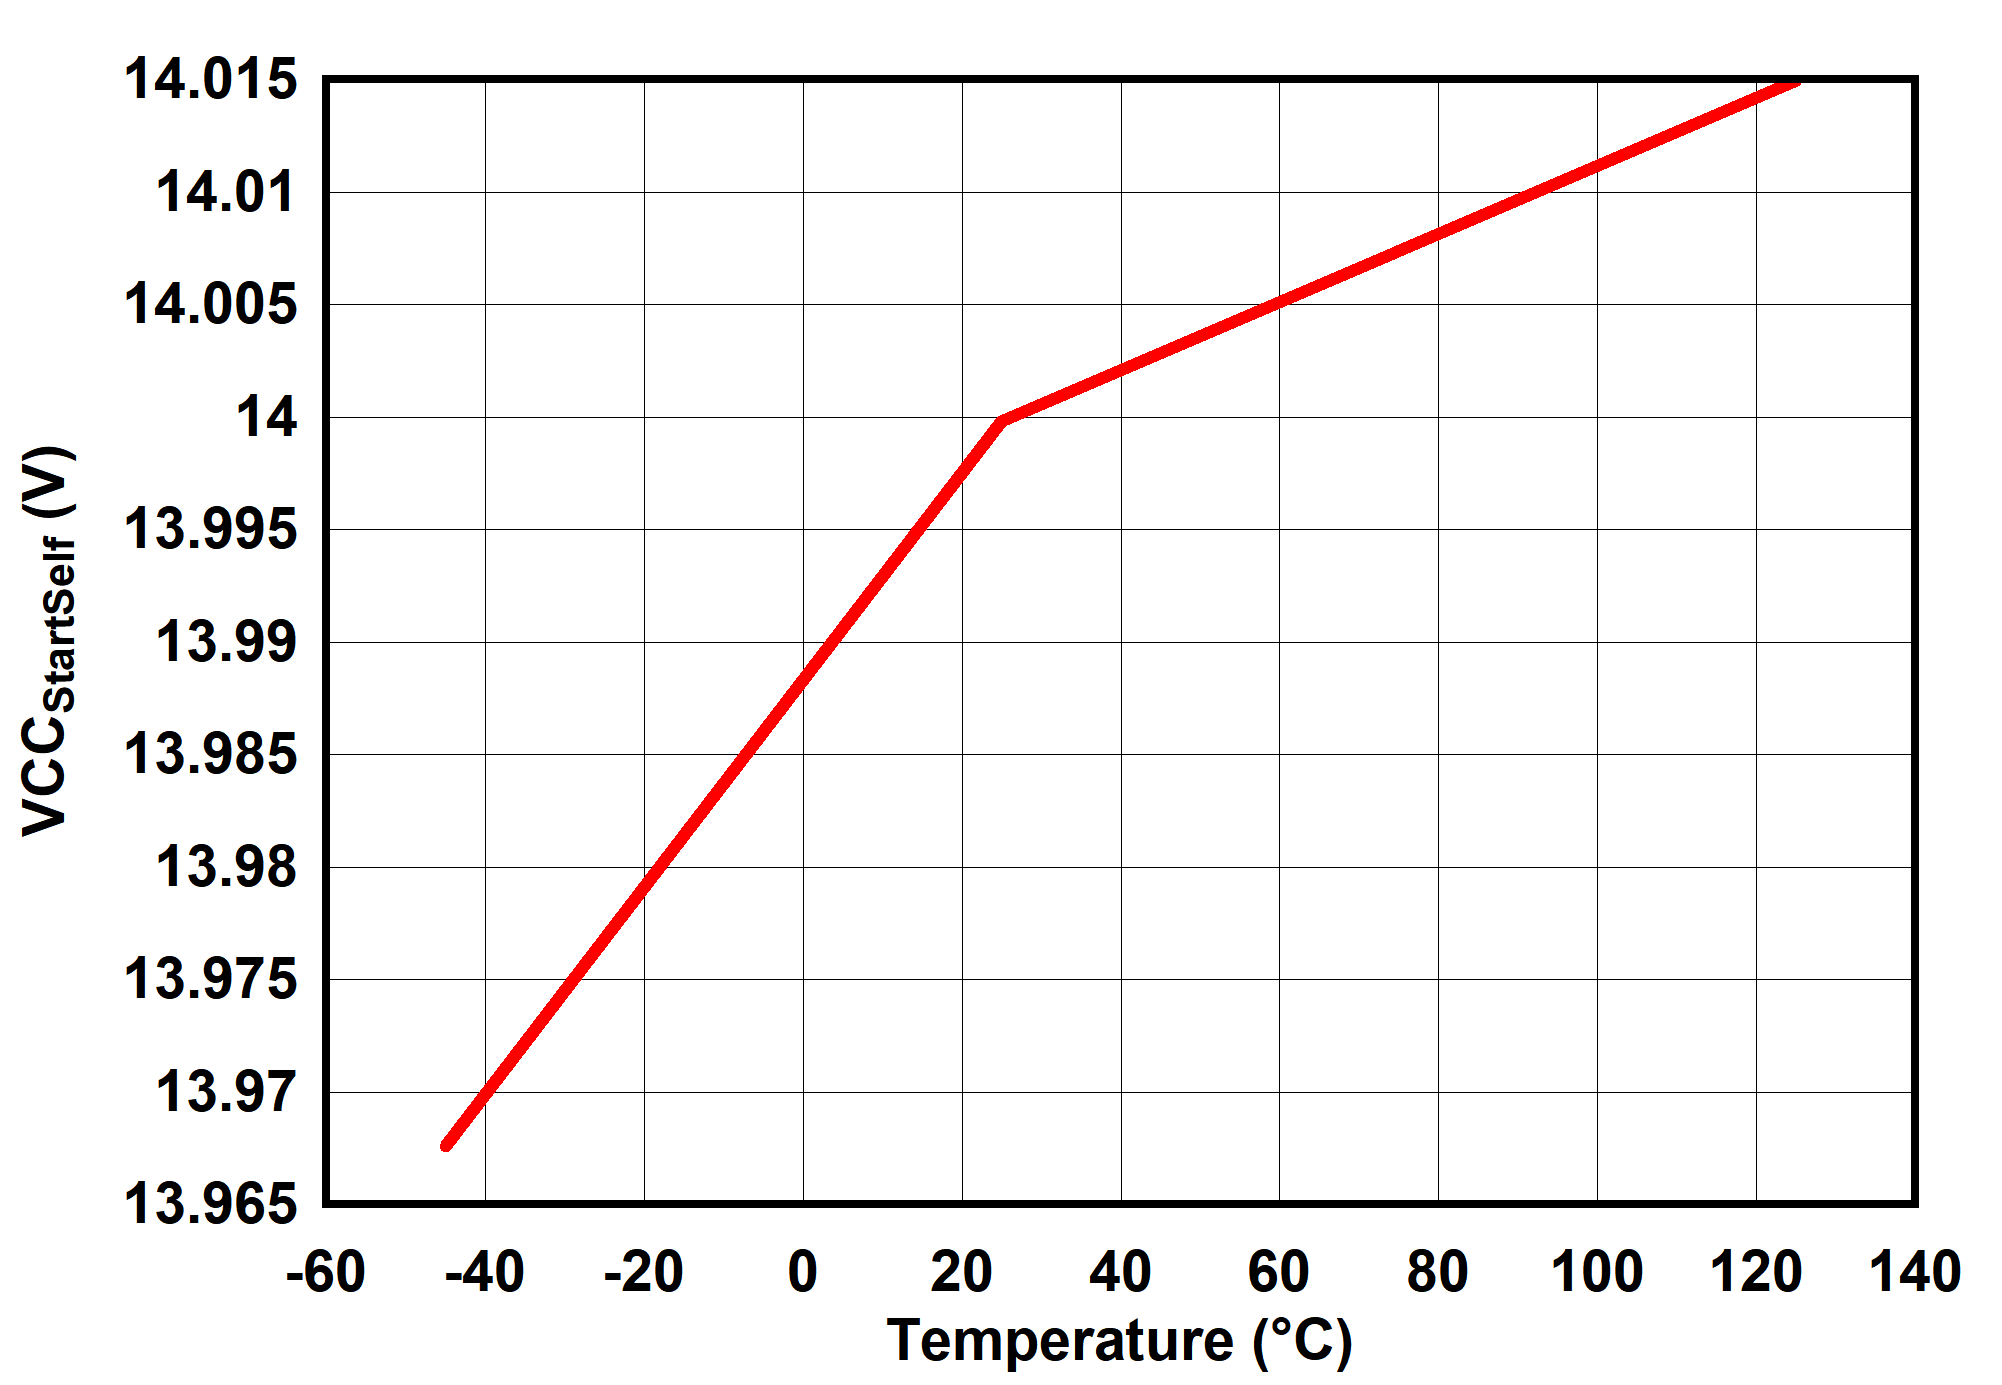 UCC25660 VCCStartSelf vs Temperature